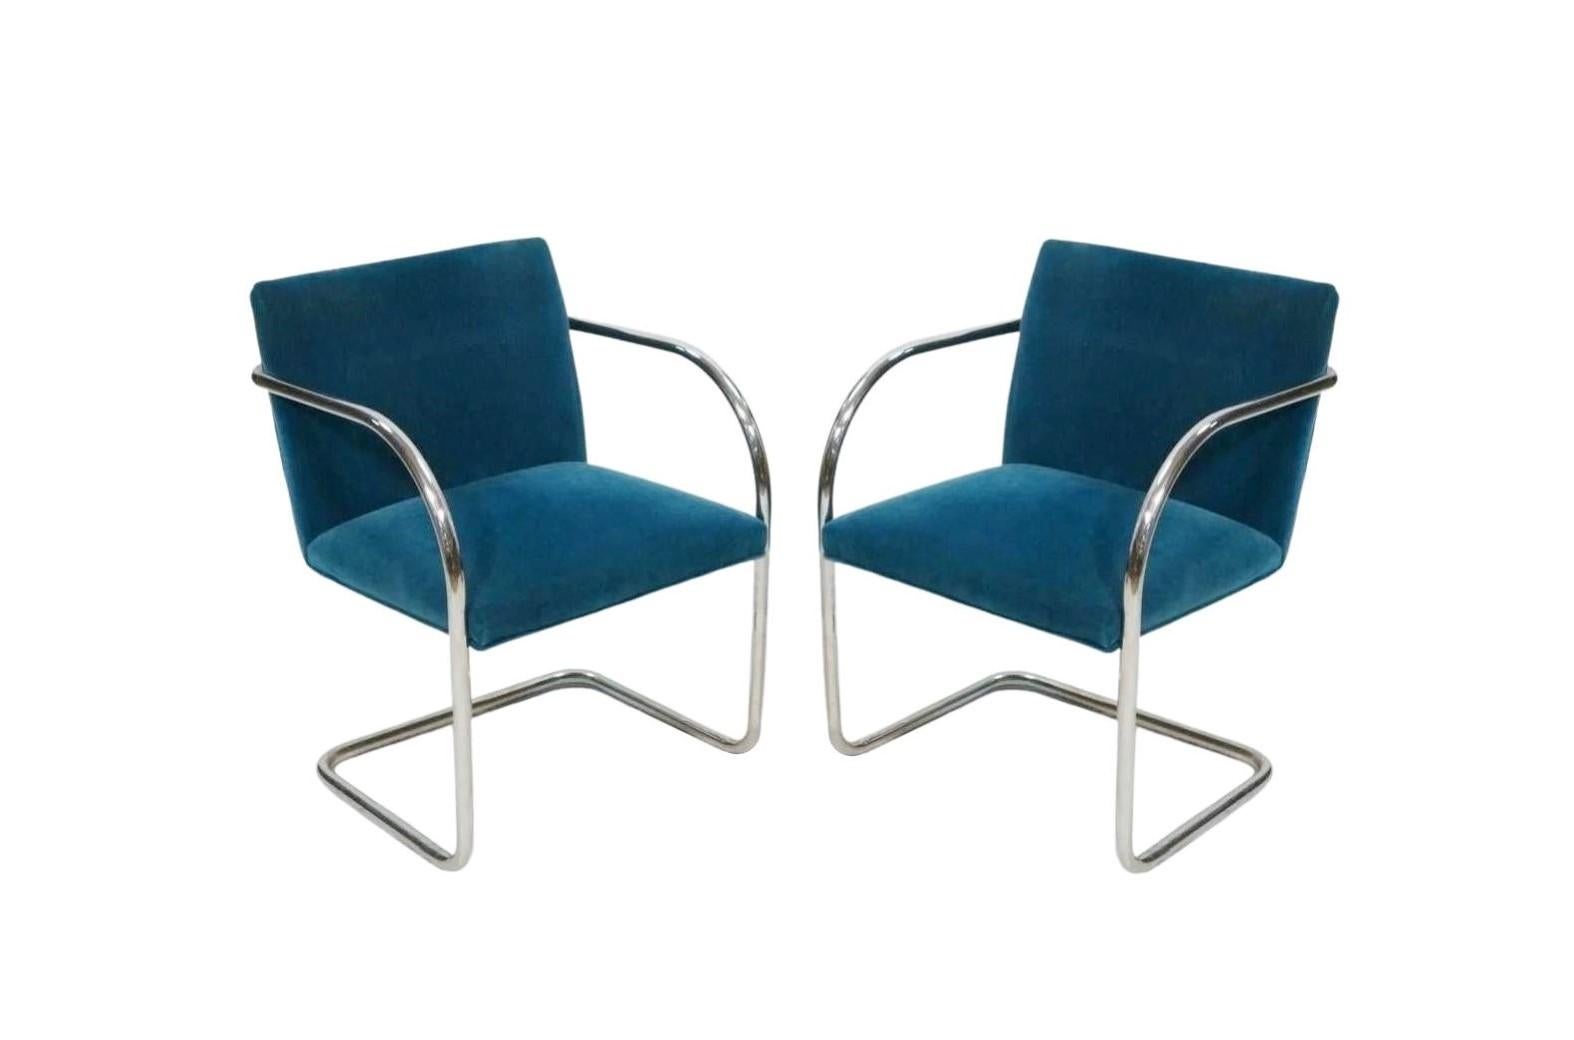 Die Definition des Minimalismus in einem einzigartigen Design, das 1929 von dem großen Ludwig Mies van der Rohe geschaffen wurde. Der Brünner Stuhl ist genau das, weltberühmt für seine moderne architektonische Form und sein freitragendes Design. Der